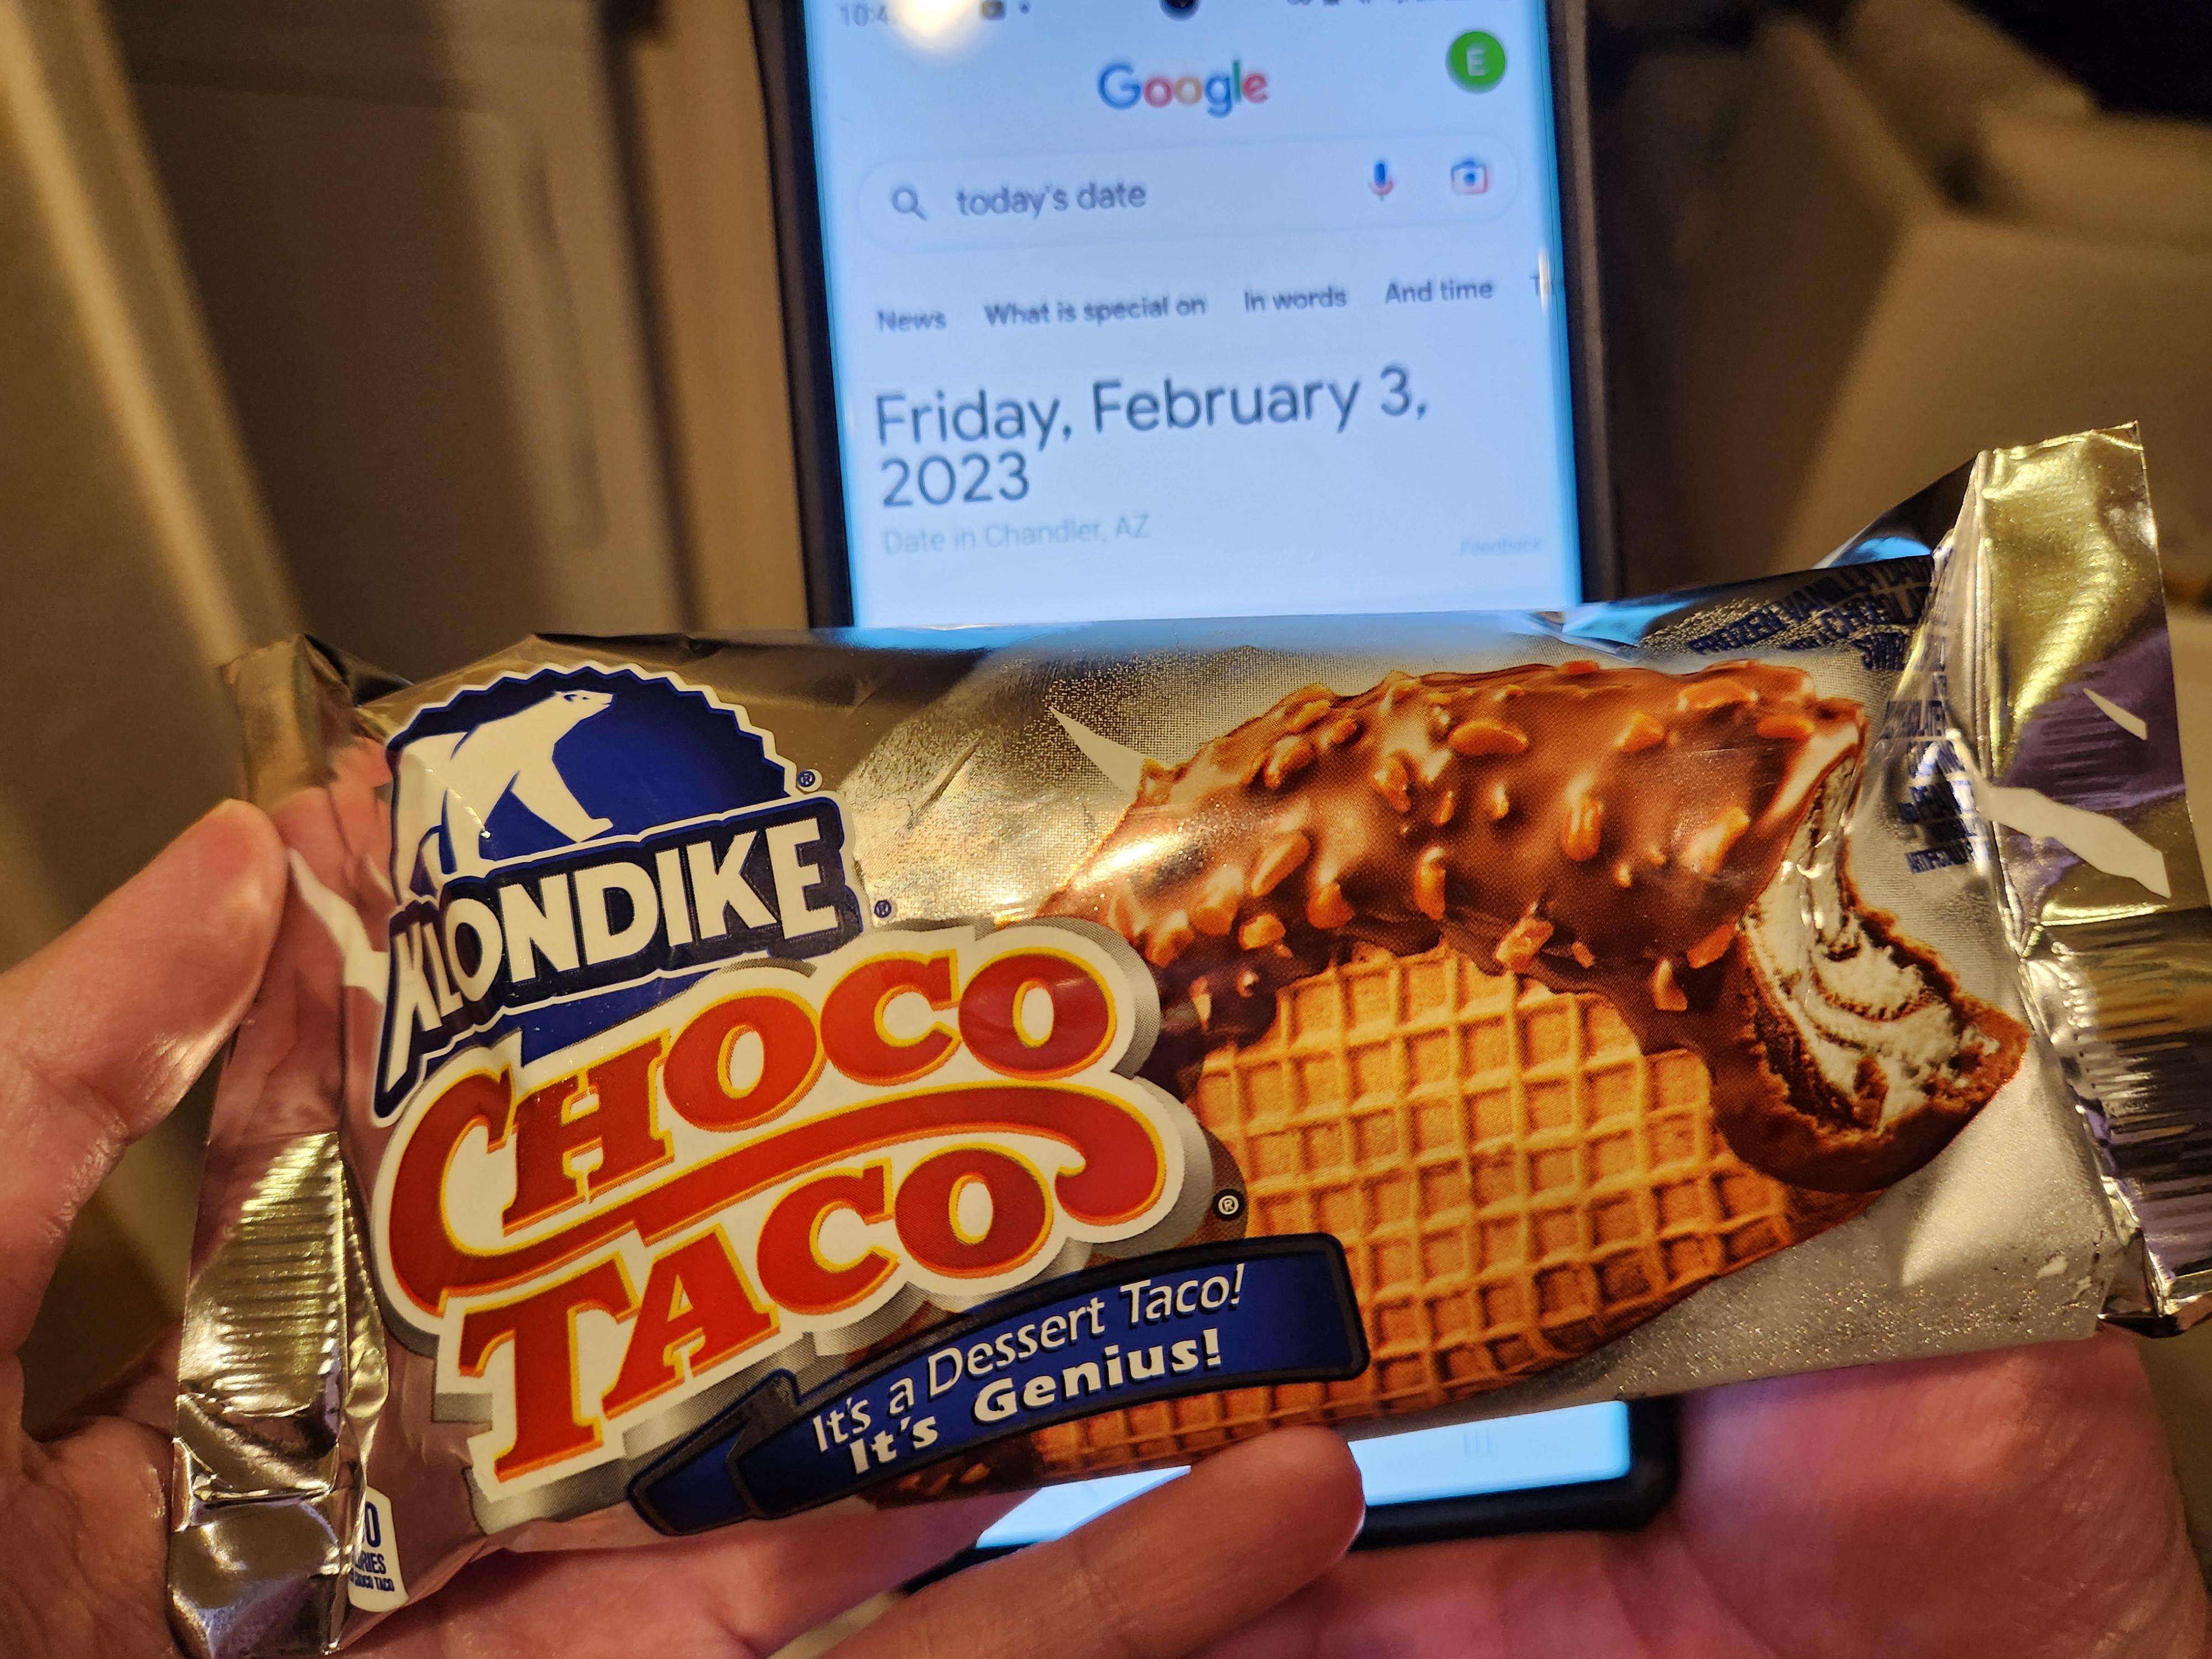 image showing Tonight, I eat the last choco taco